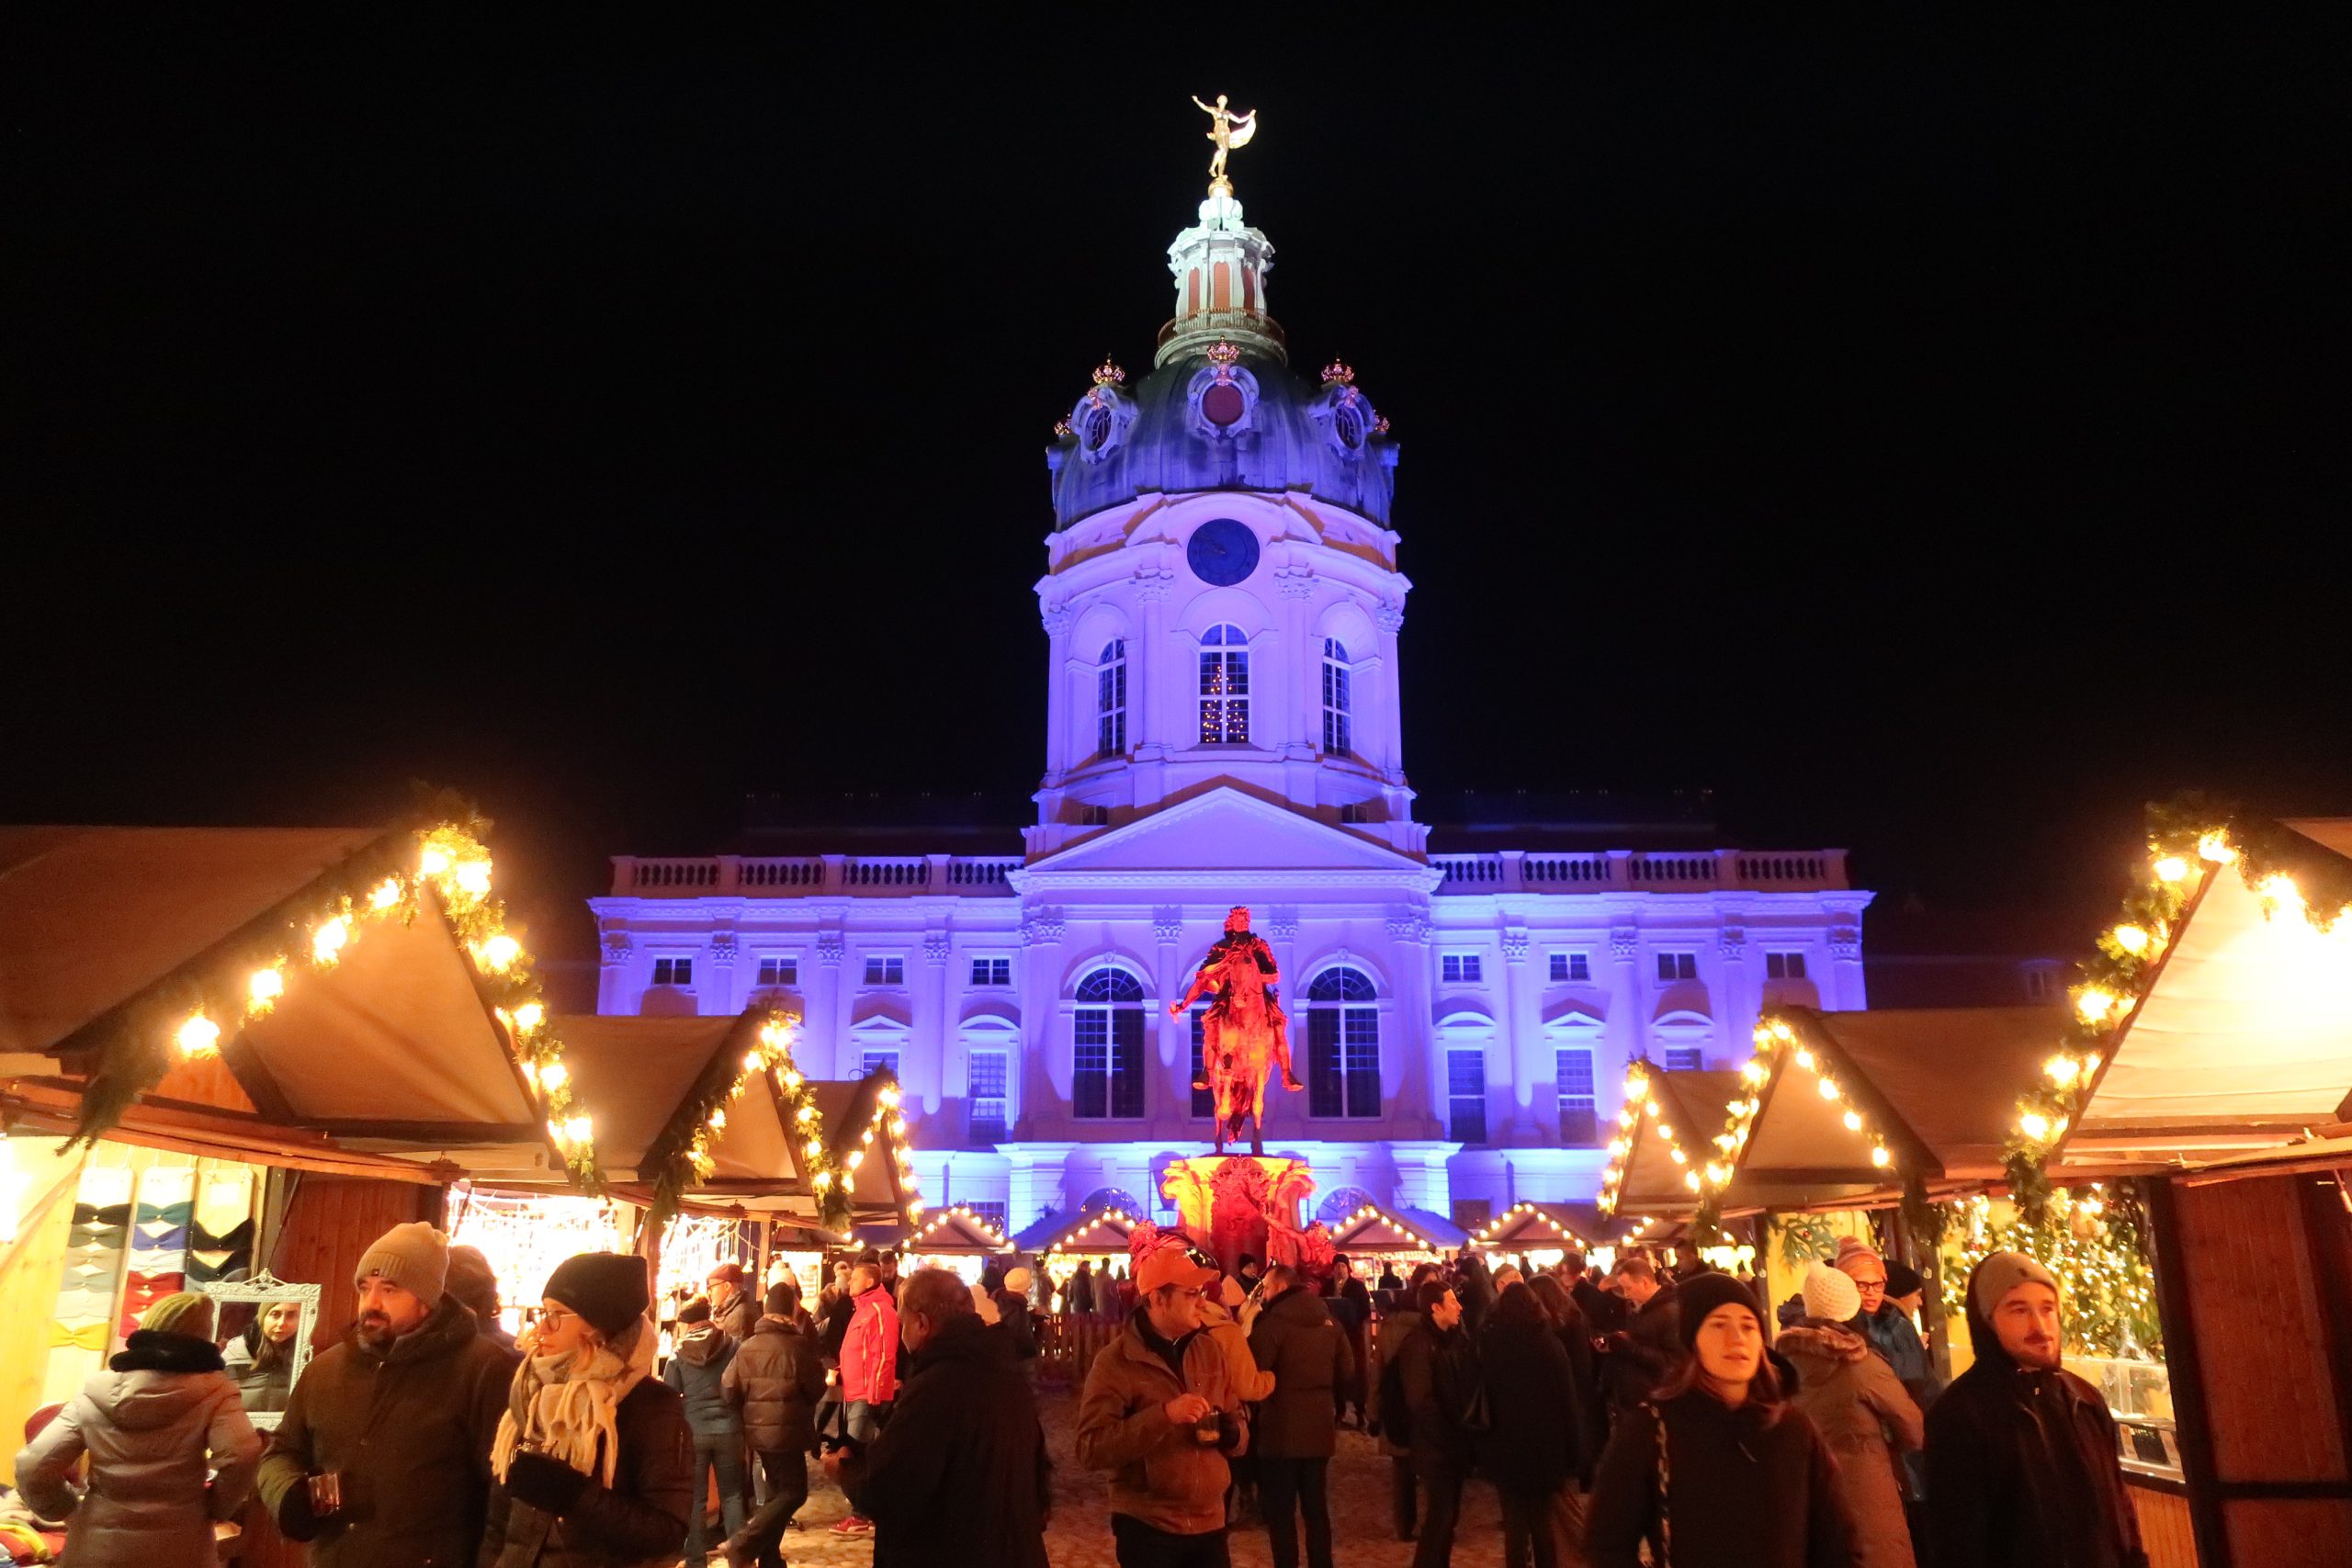 22年で最後の開催となるベルリンのシャルロッテンブルク宮殿のクリスマスマーケット ドイツ便り